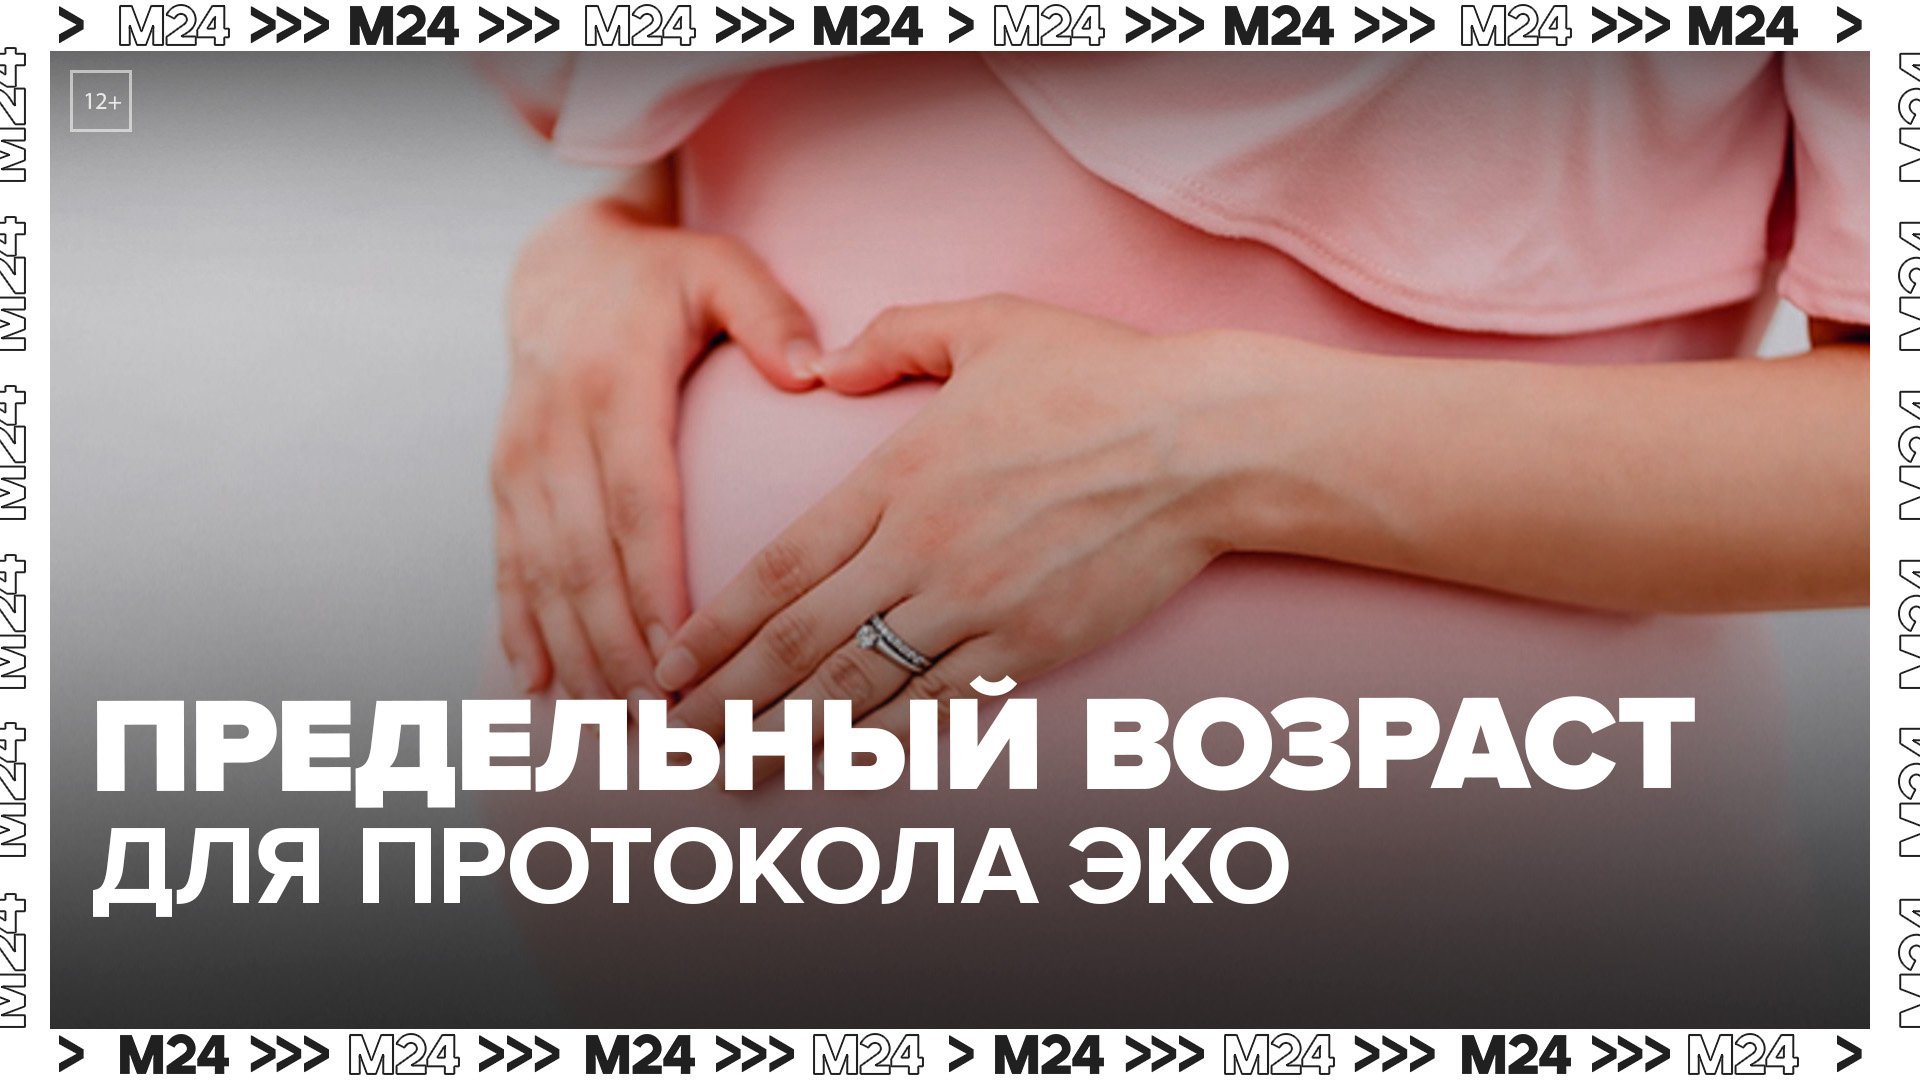 "Актуальный репортаж": россиянкам могут ограничить возраст вступления в протокол ЭКО - Москва 24